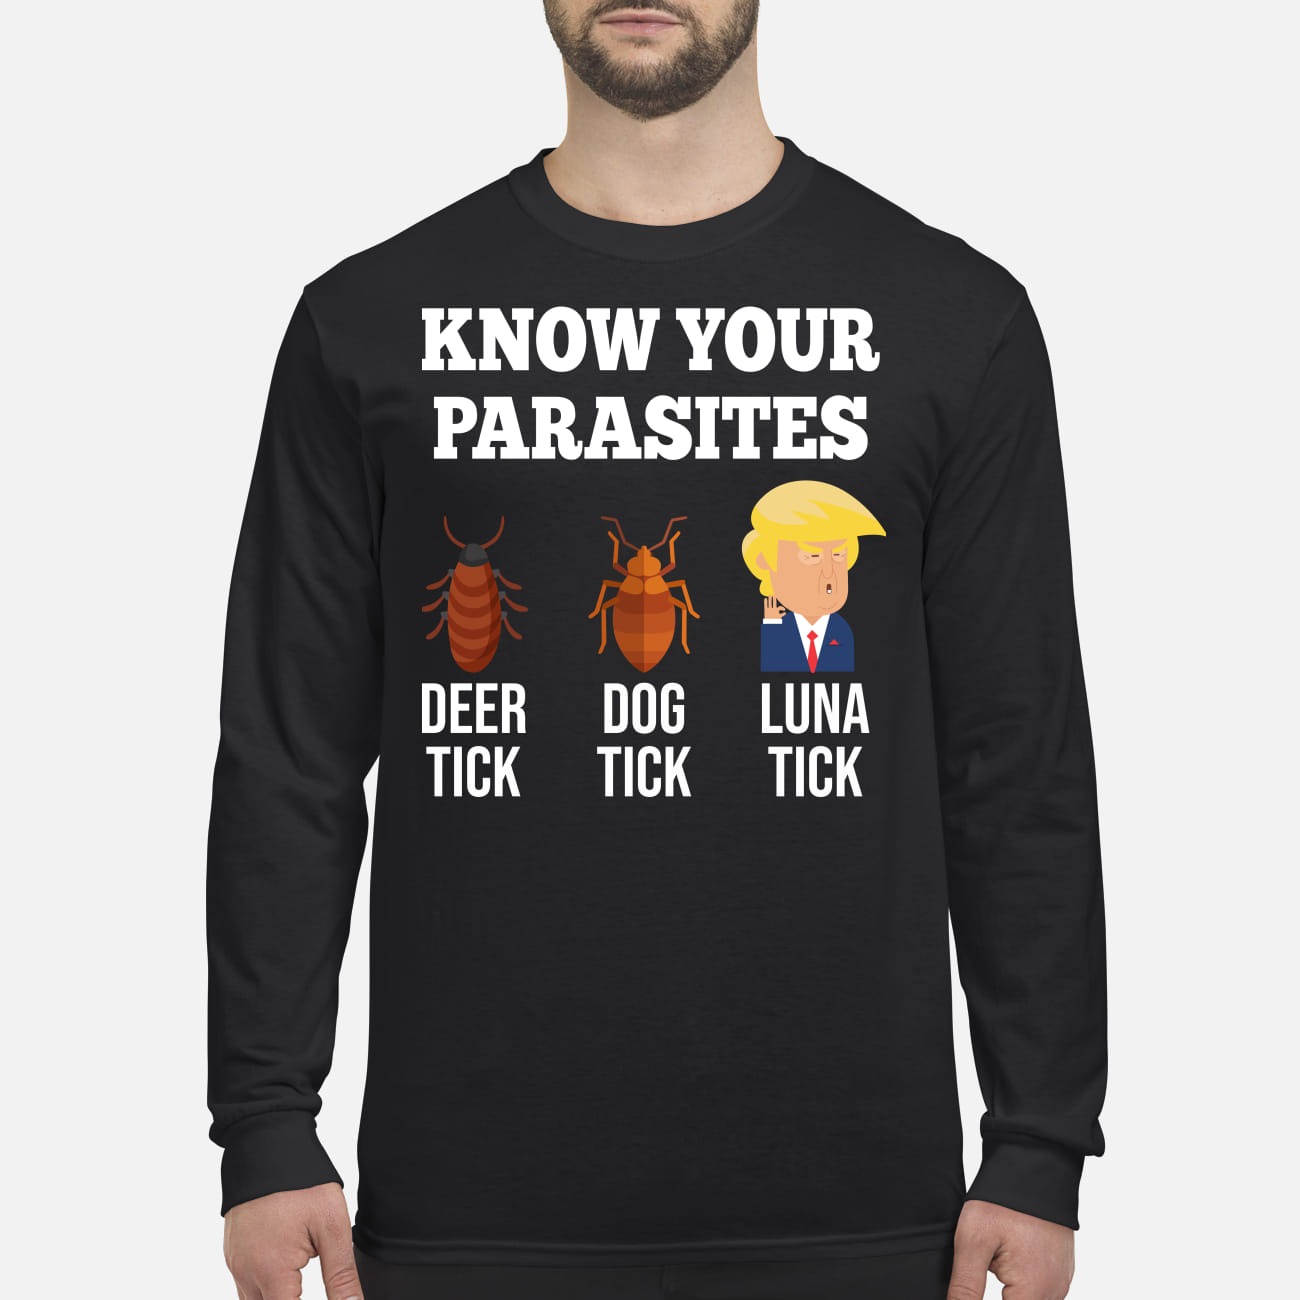 Know your parasites deer tick dog tick luna tick Trump men's long sleeved shirt